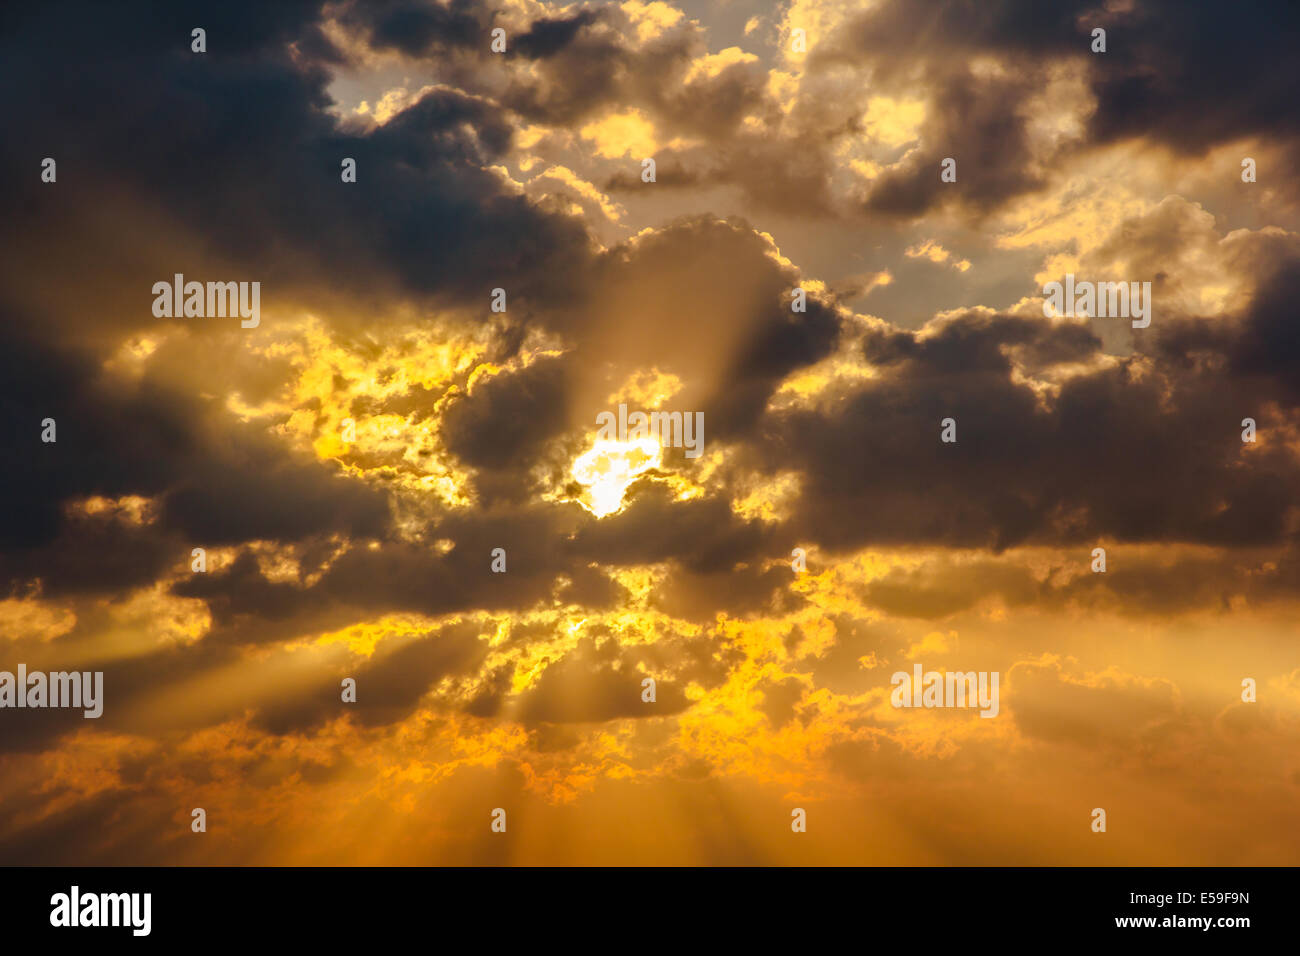 Cloud-Sonne Strahl Strahl warmen orange Lichtfarbe dramatischen Hintergrund  Stockfotografie - Alamy